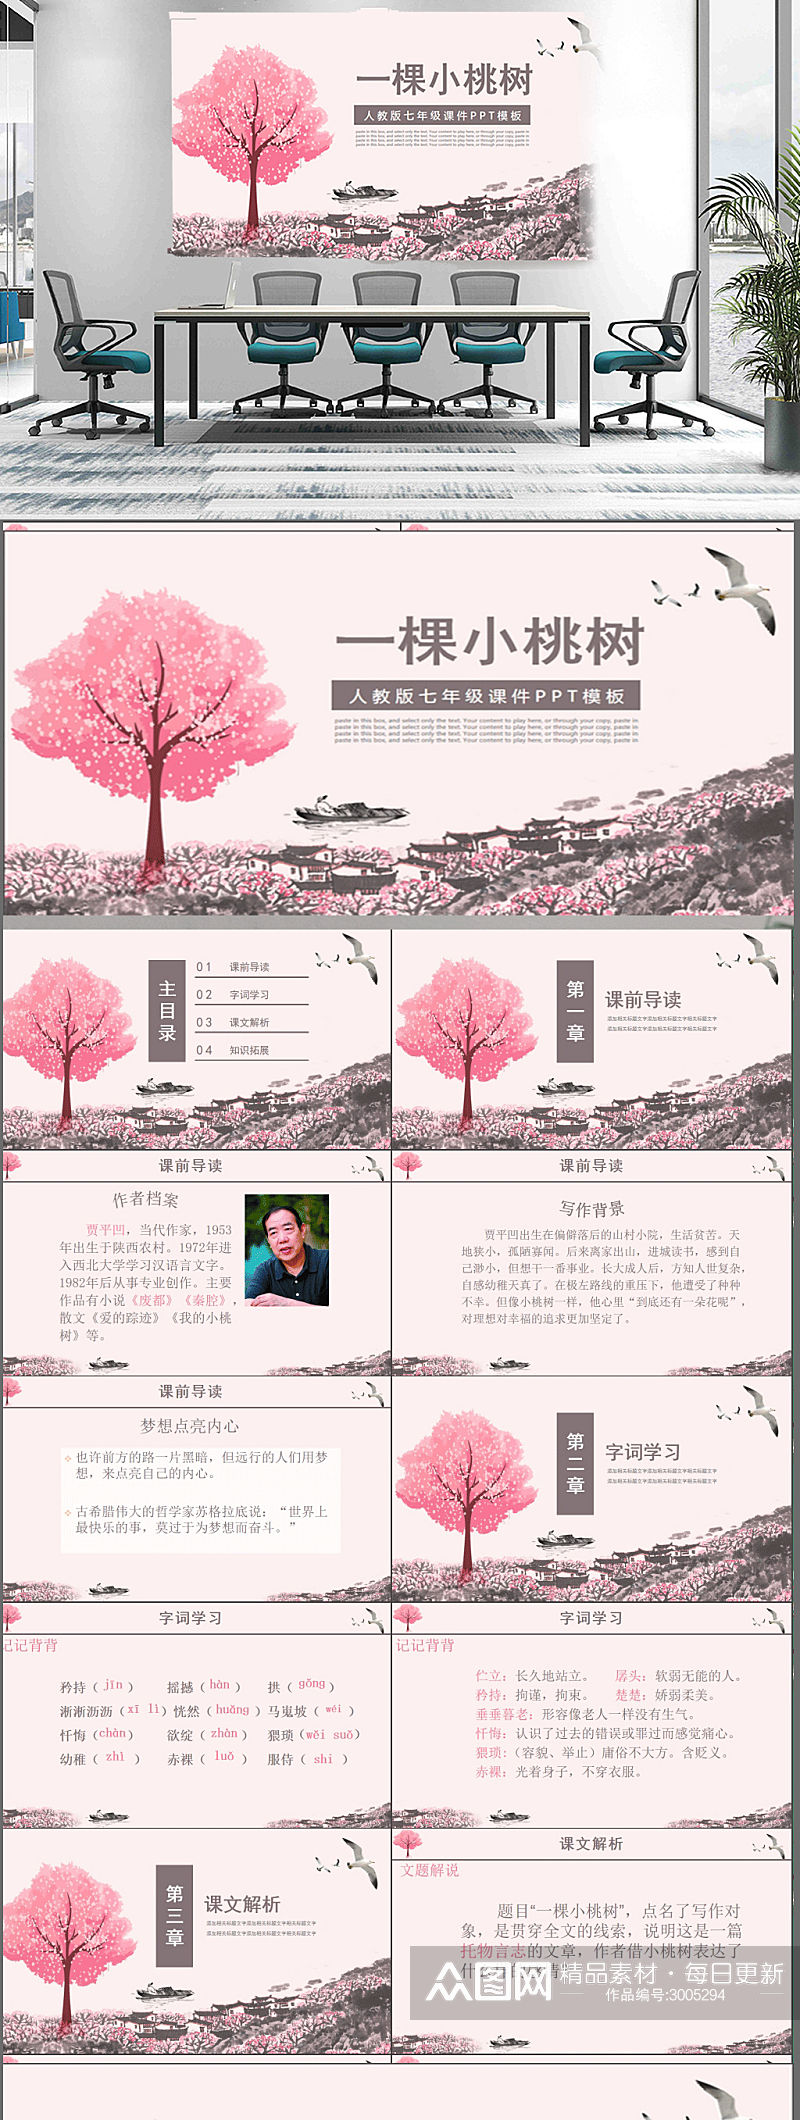 一颗小桃树高中初中语文课件素材